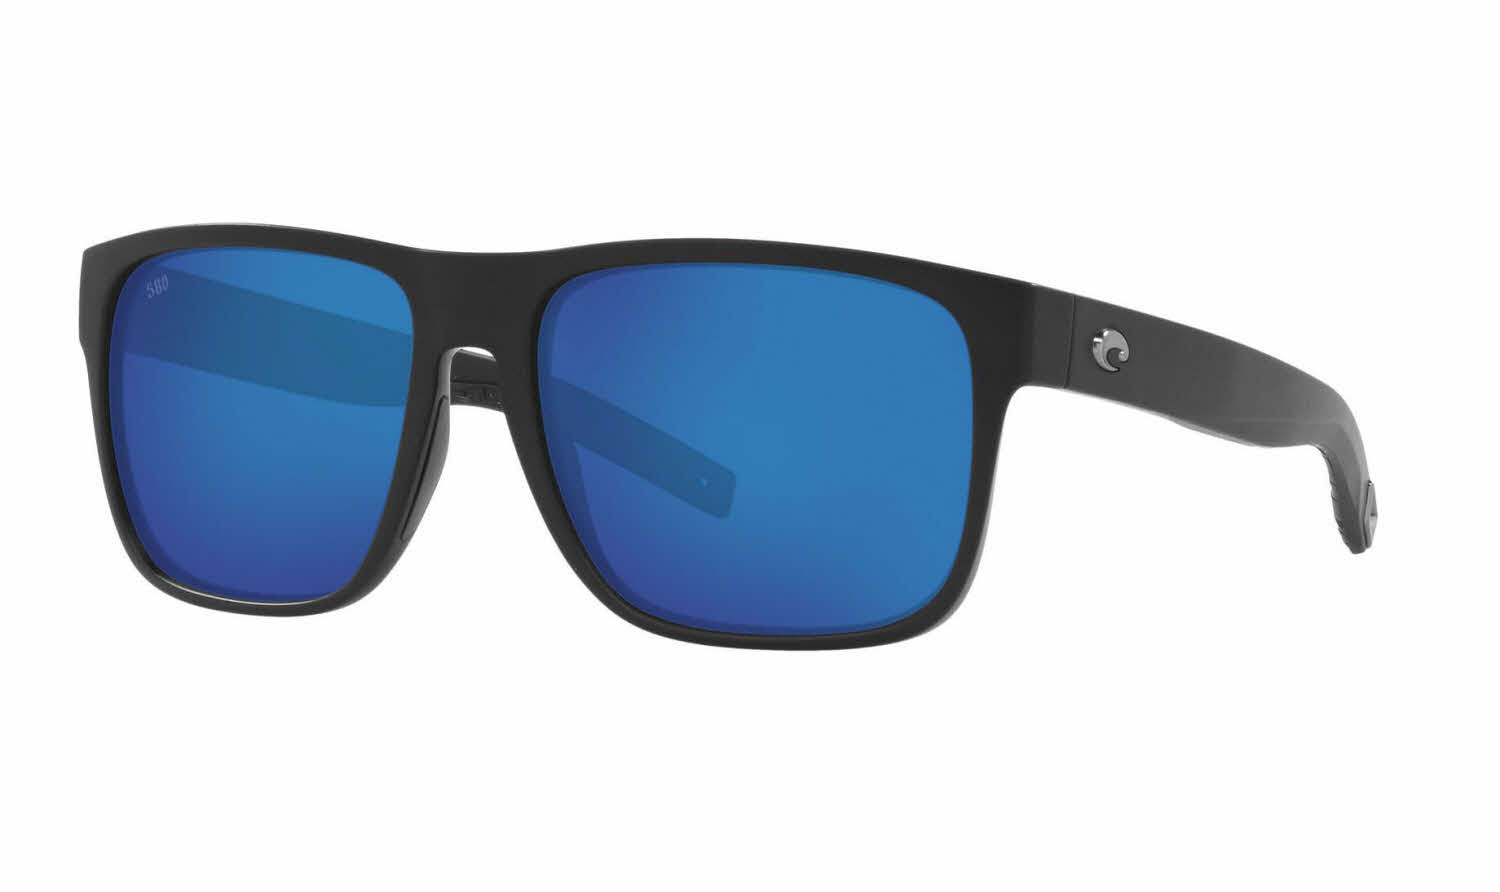 Costa Spearo XL Sunglasses - Matte Black/Blue Mirror 580G